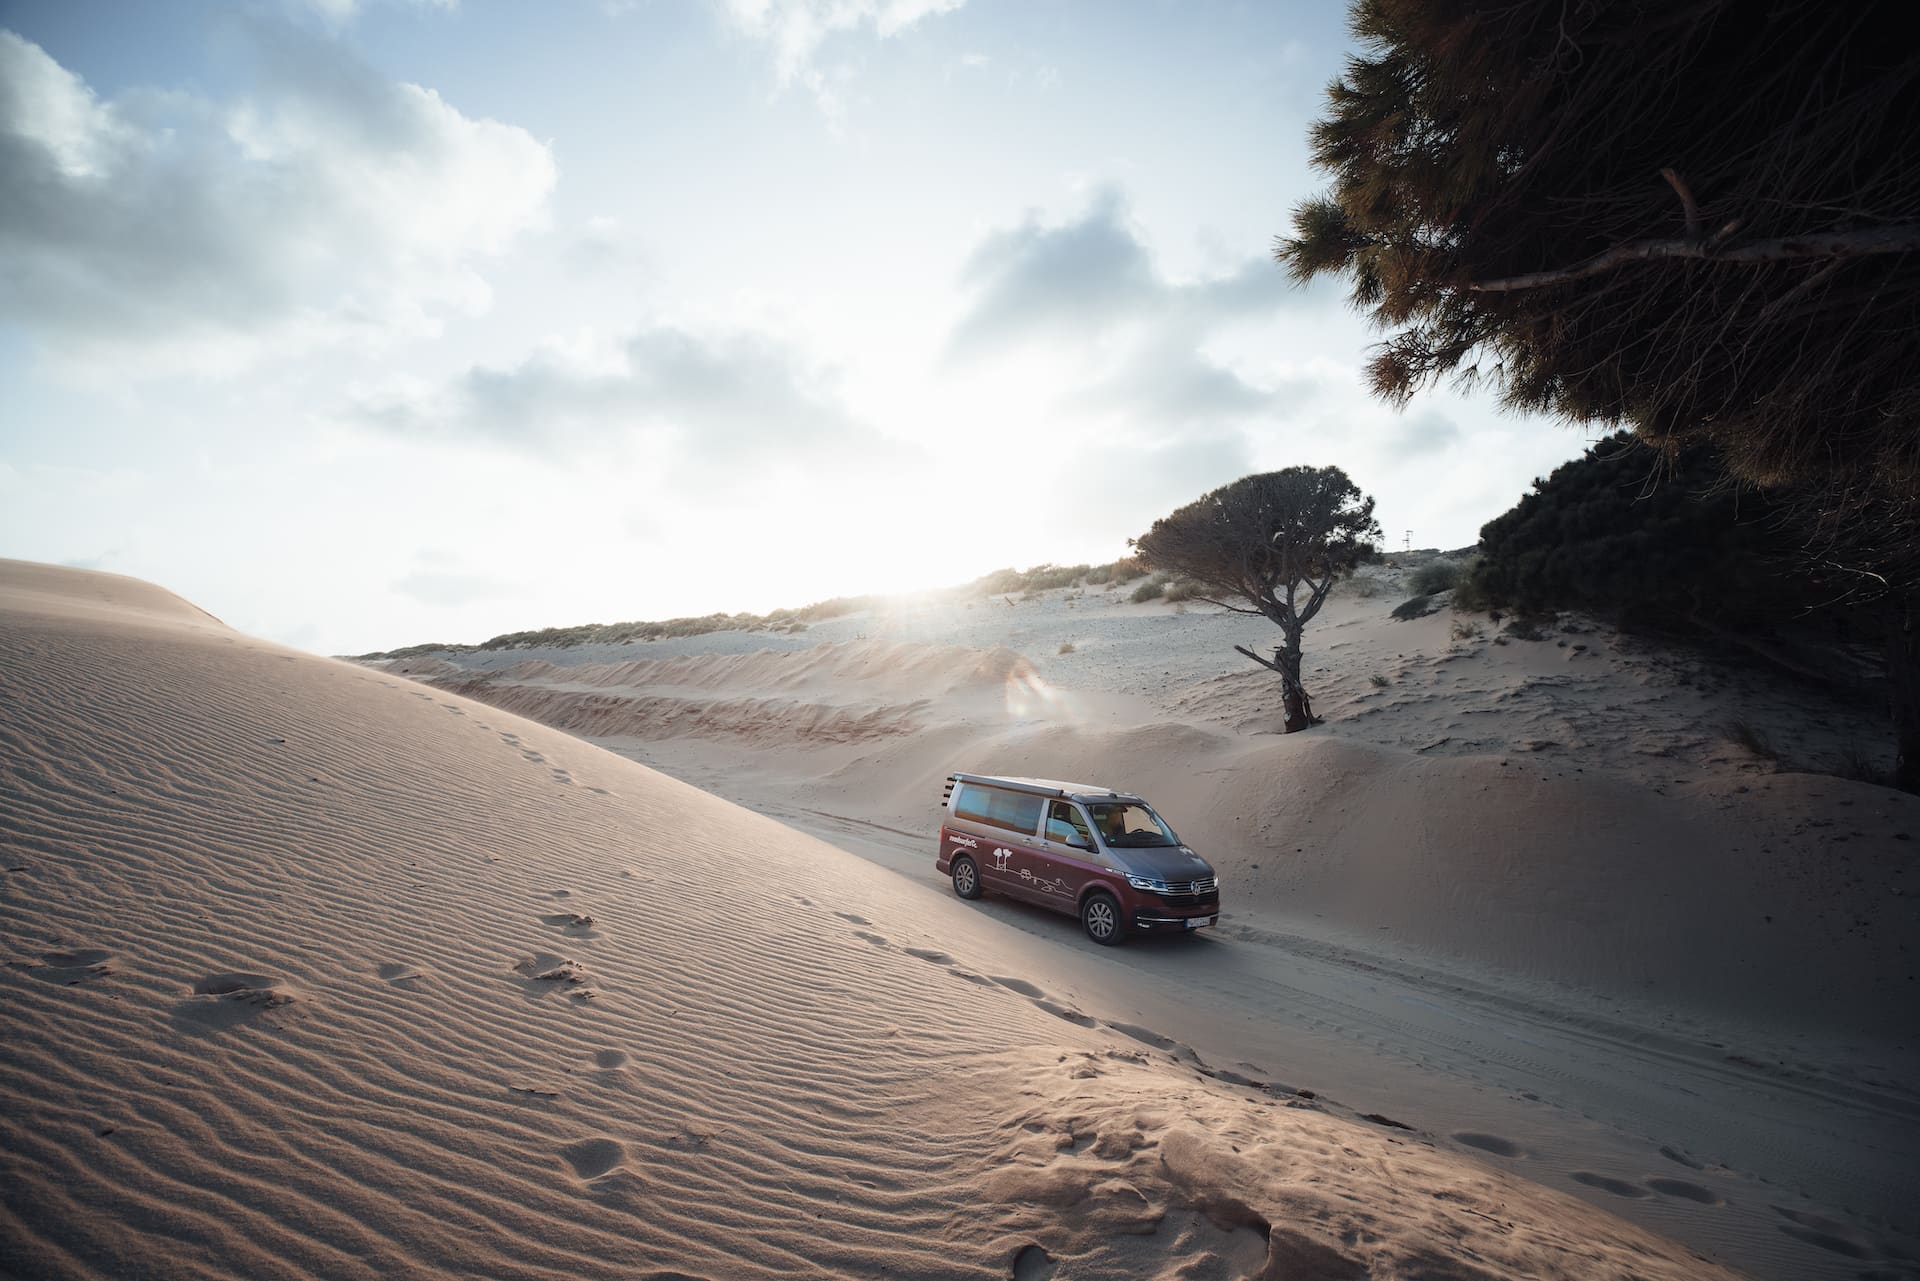 Rundreise durch Andalusien mit dem Van durch Sanddünen